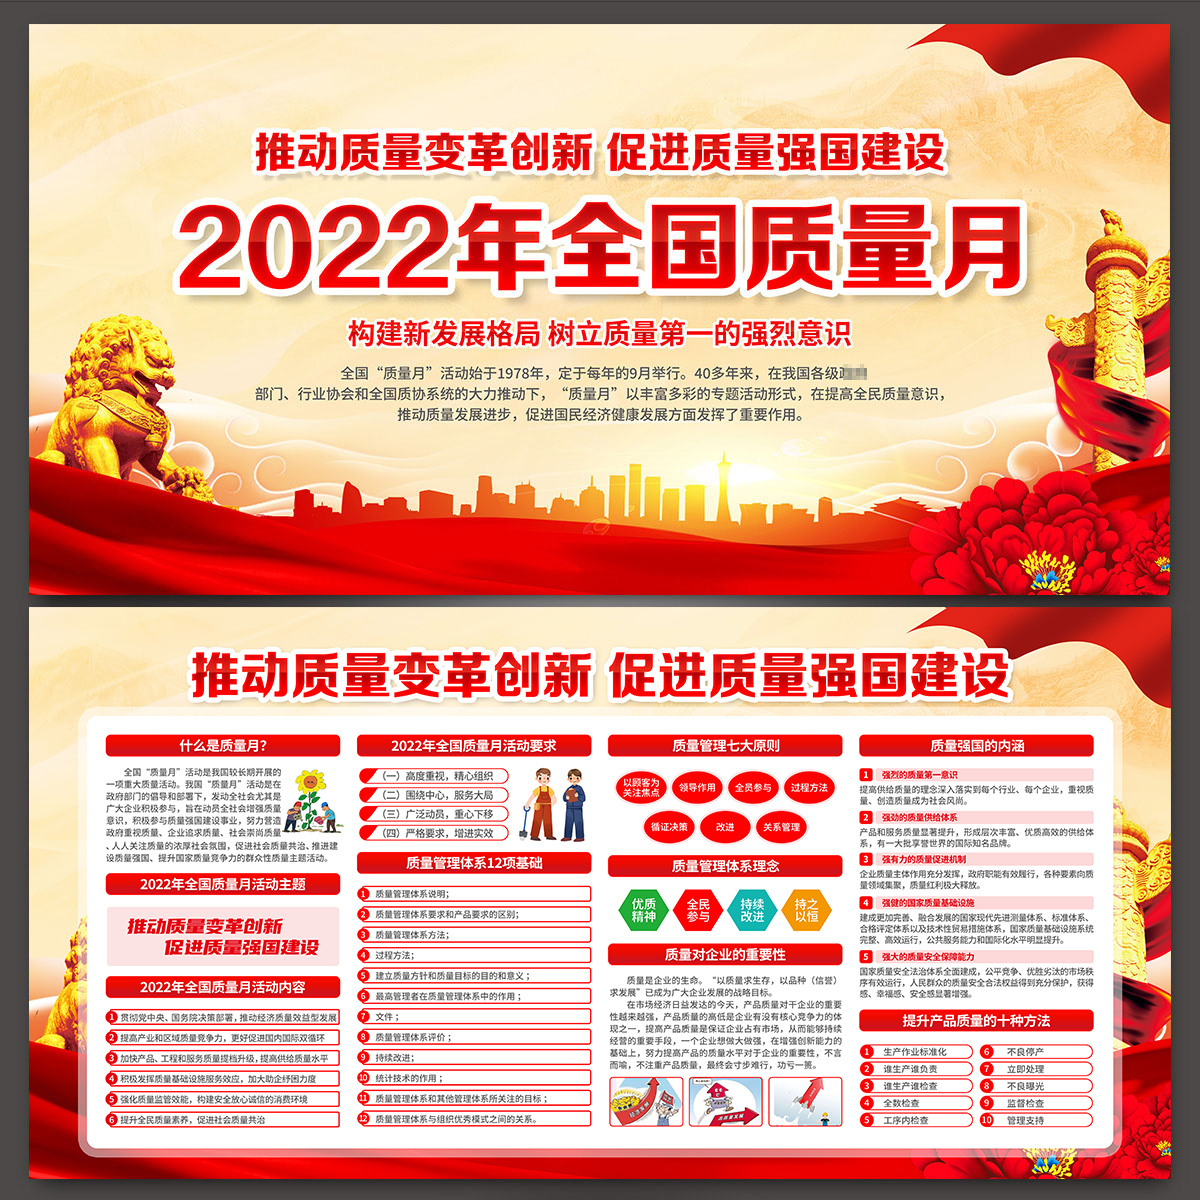 2022年全国质量月红色大气主题展板宣传海报图片PSD模版素材-T302